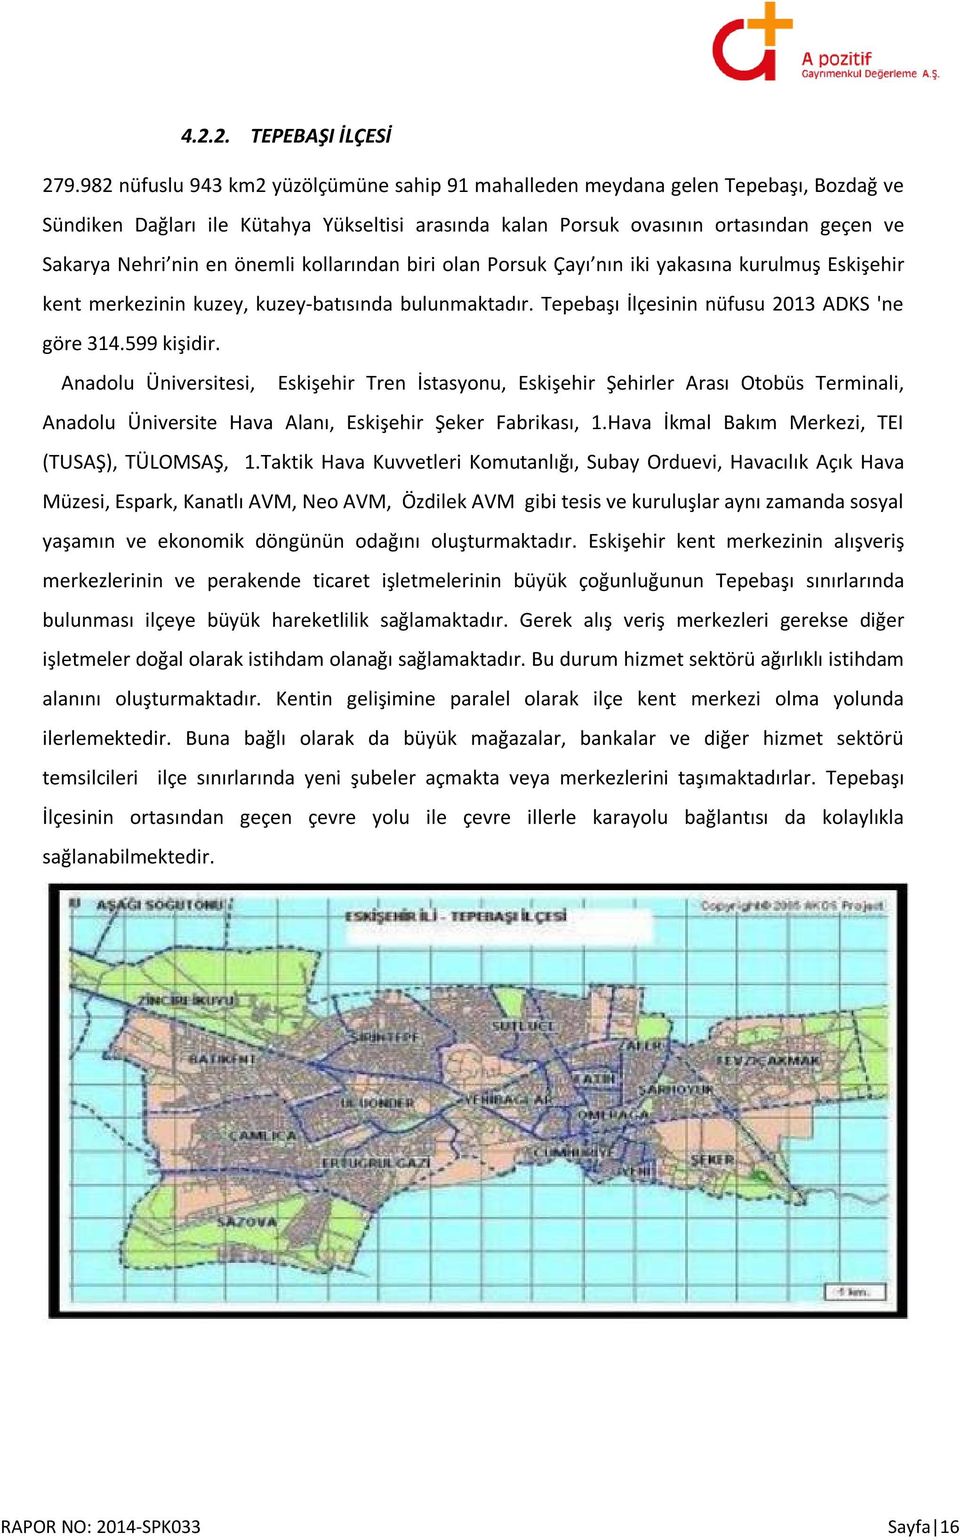 önemli kollarından biri olan Porsuk Çayı nın iki yakasına kurulmuş Eskişehir kent merkezinin kuzey, kuzey-batısında bulunmaktadır. Tepebaşı İlçesinin nüfusu 2013 ADKS 'ne göre 314.599 kişidir.